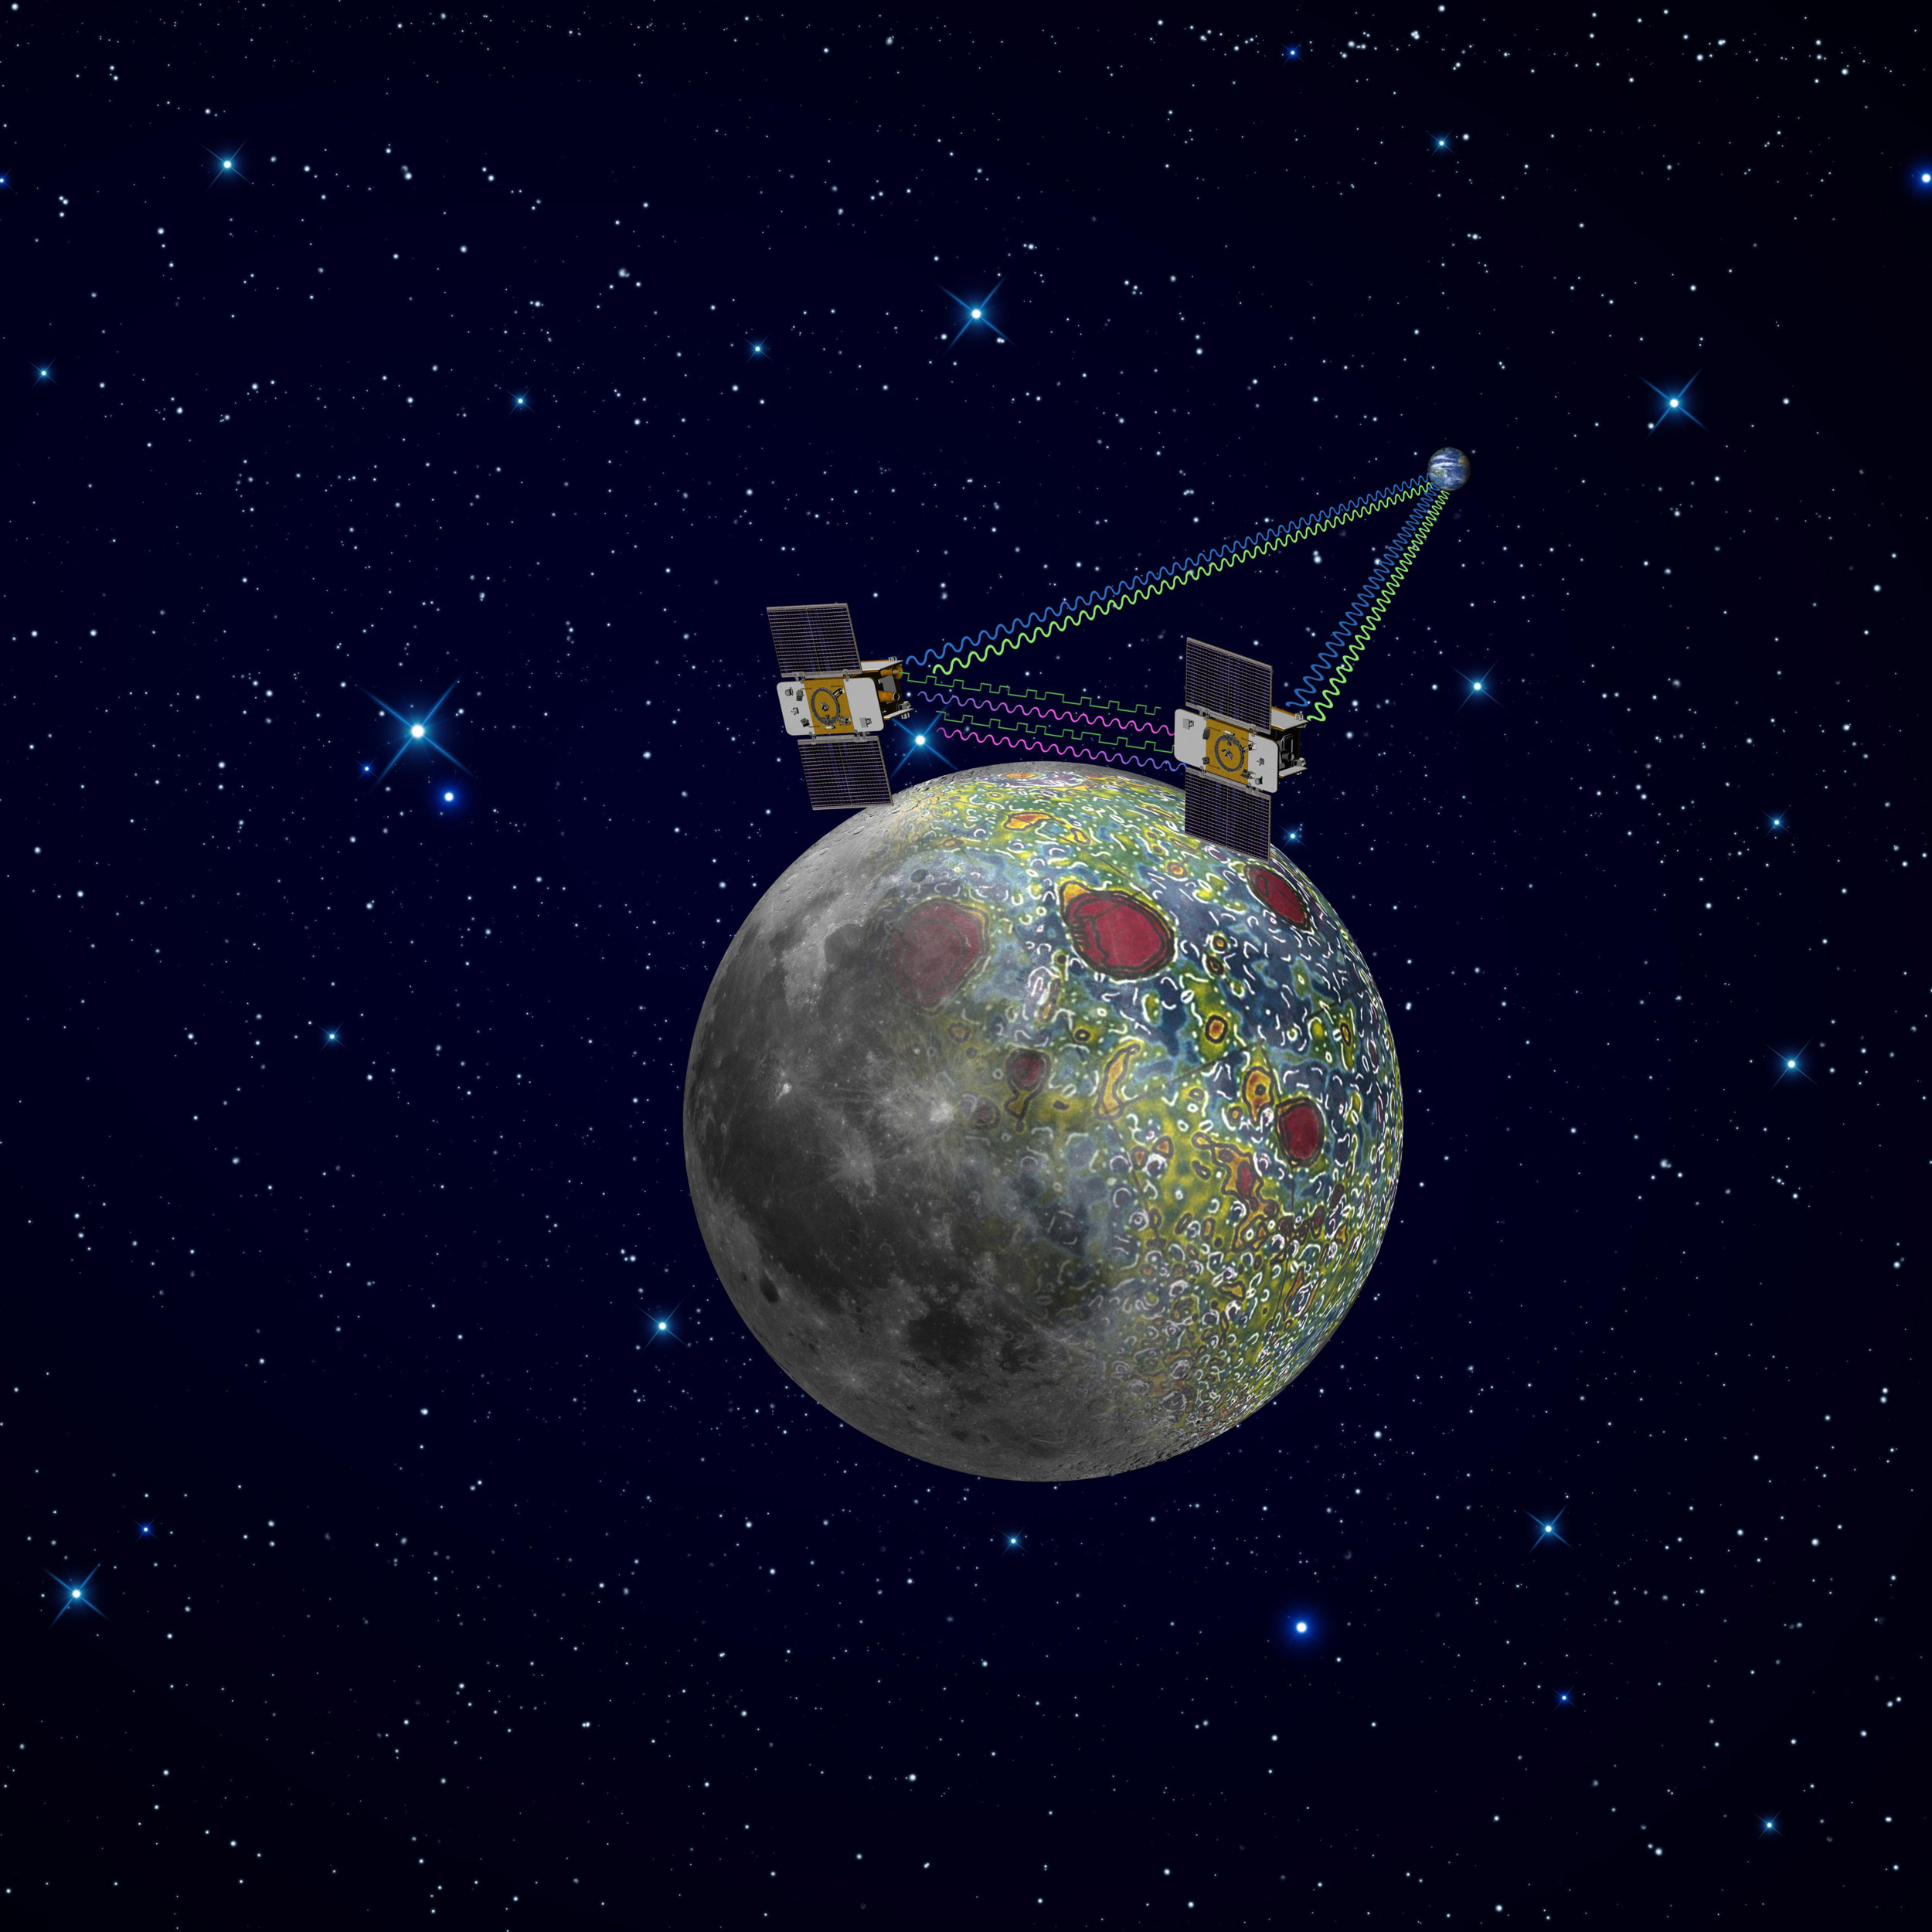 Les deux sondes de la mission Grail (Nasa) sont arrivées en orbite autour de la Lune. Elles s'apprêtent à cartographier le champ de gravité de notre satellite, ce qui permet de remonter à sa structure interne. © Nasa/JPL-Caltech